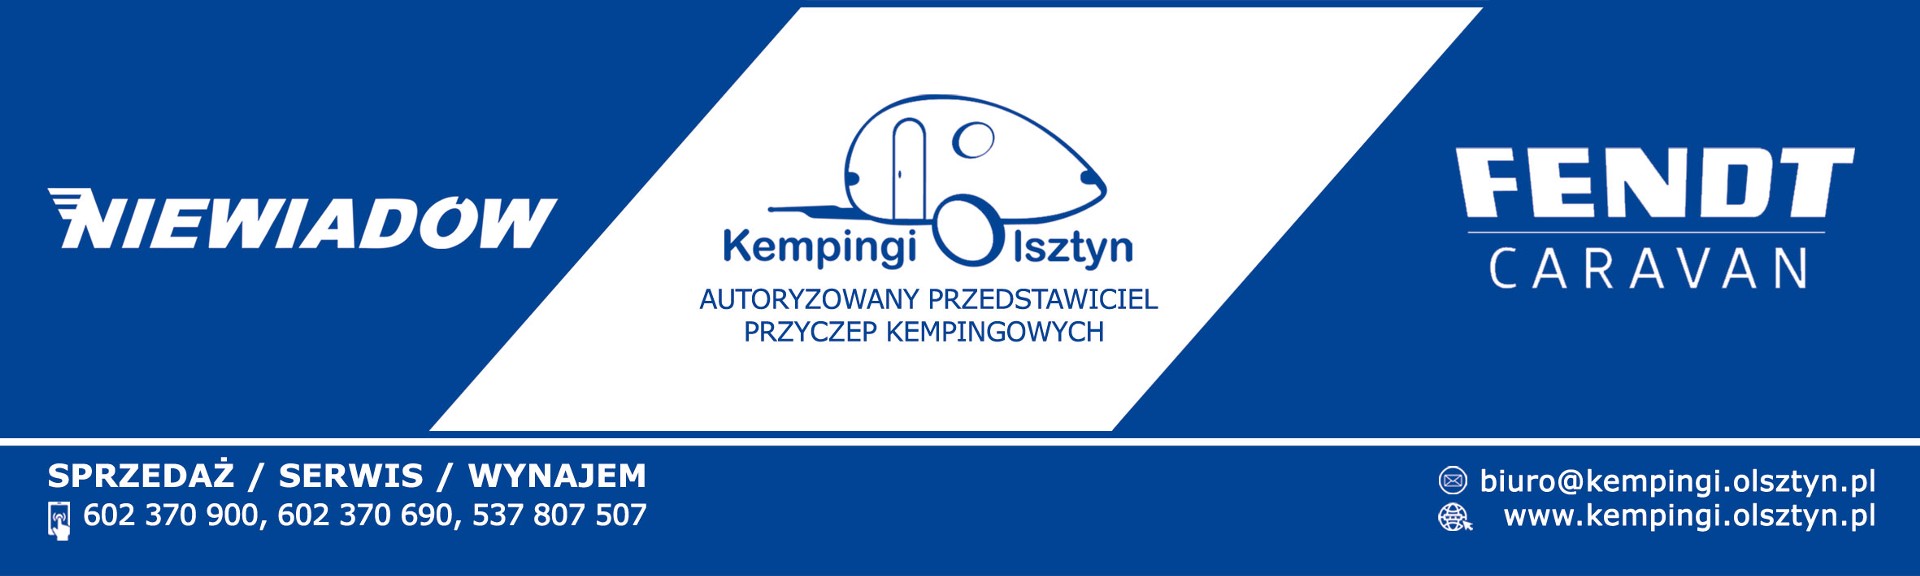 Banner ze zdjęciem firmy Kempingi.Olsztyn